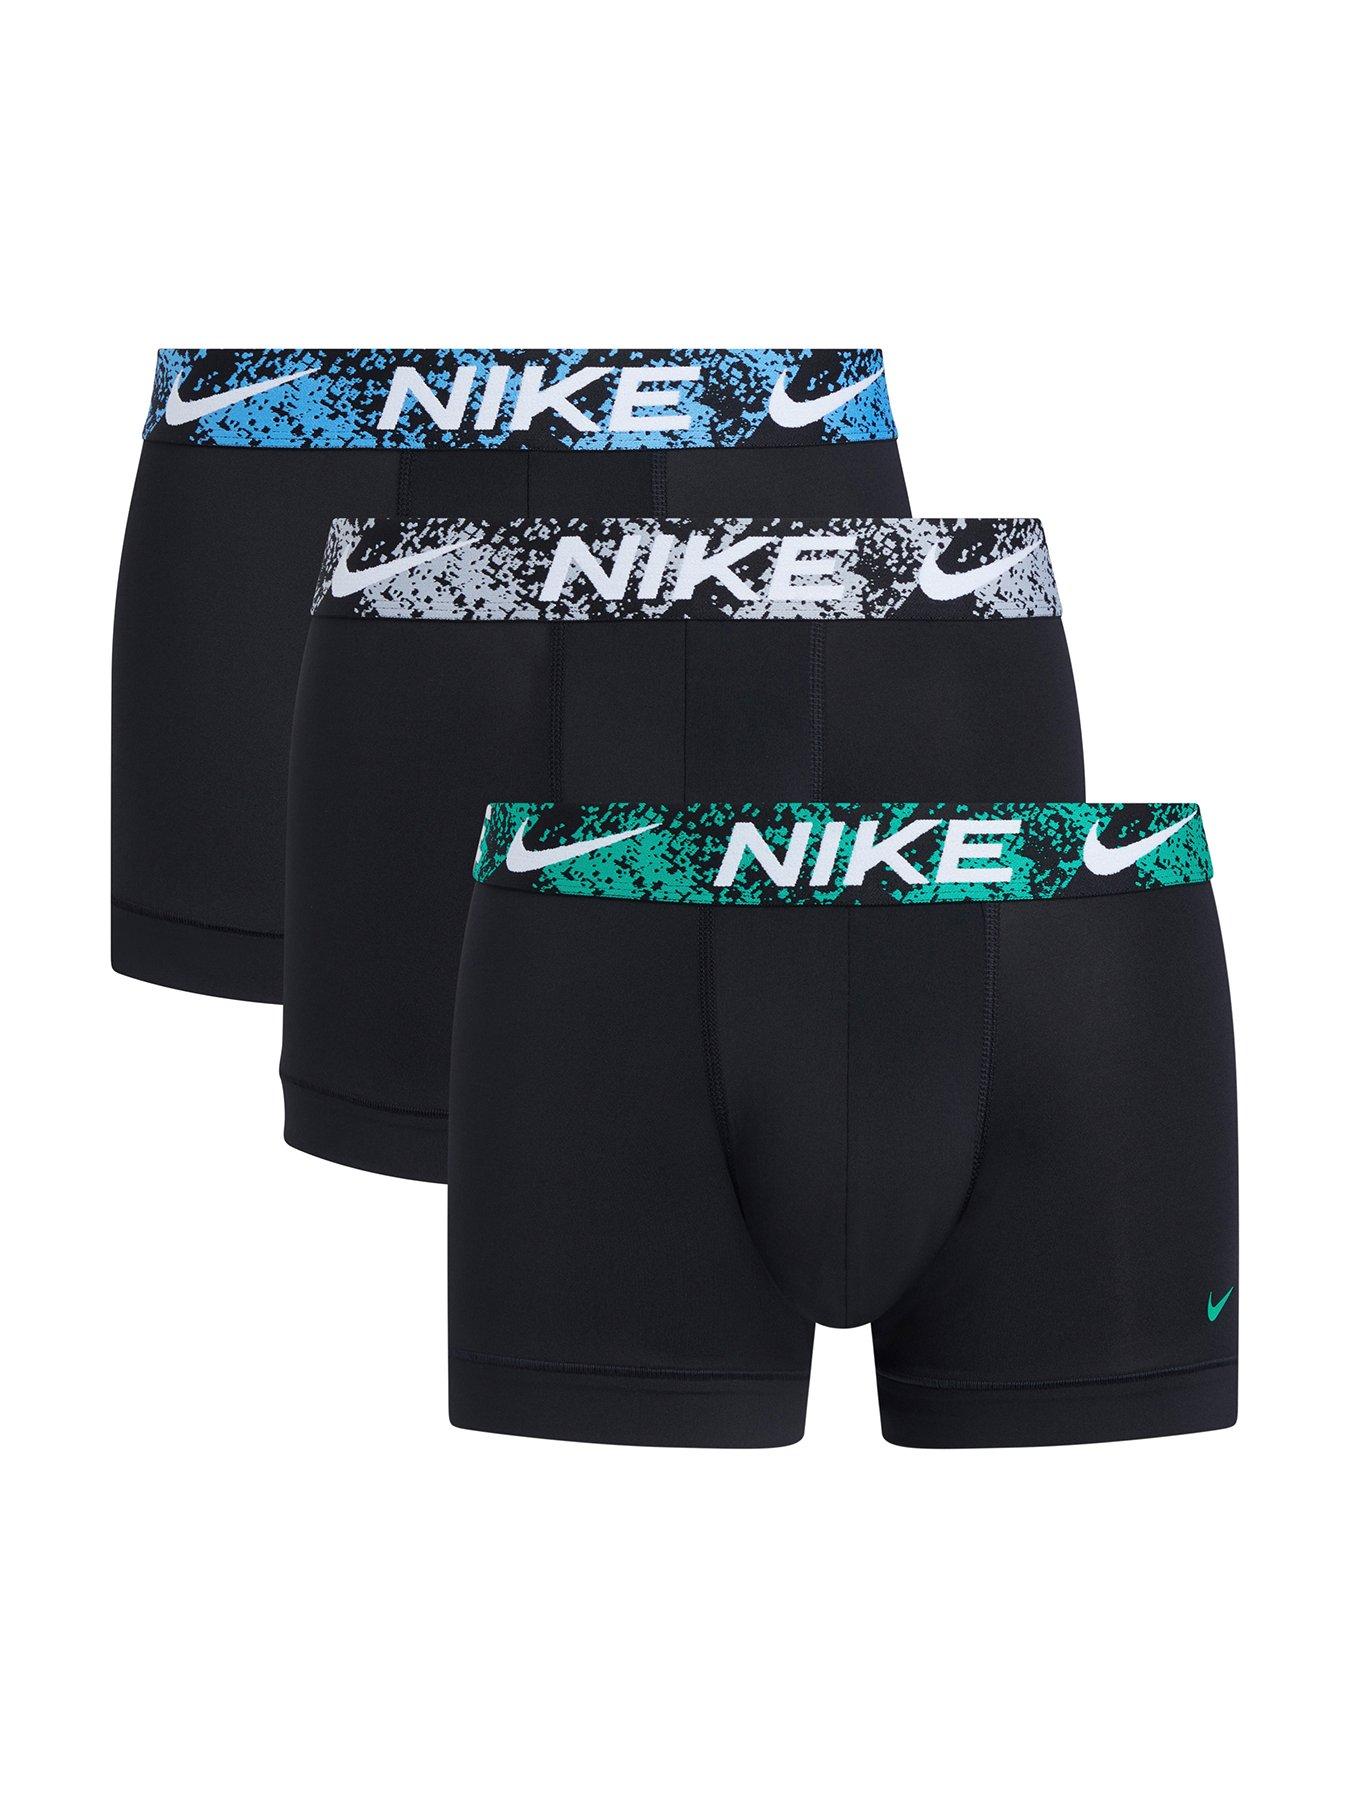 Nike Underwear Mens Essential Trunks - 3 Pack | very.co.uk